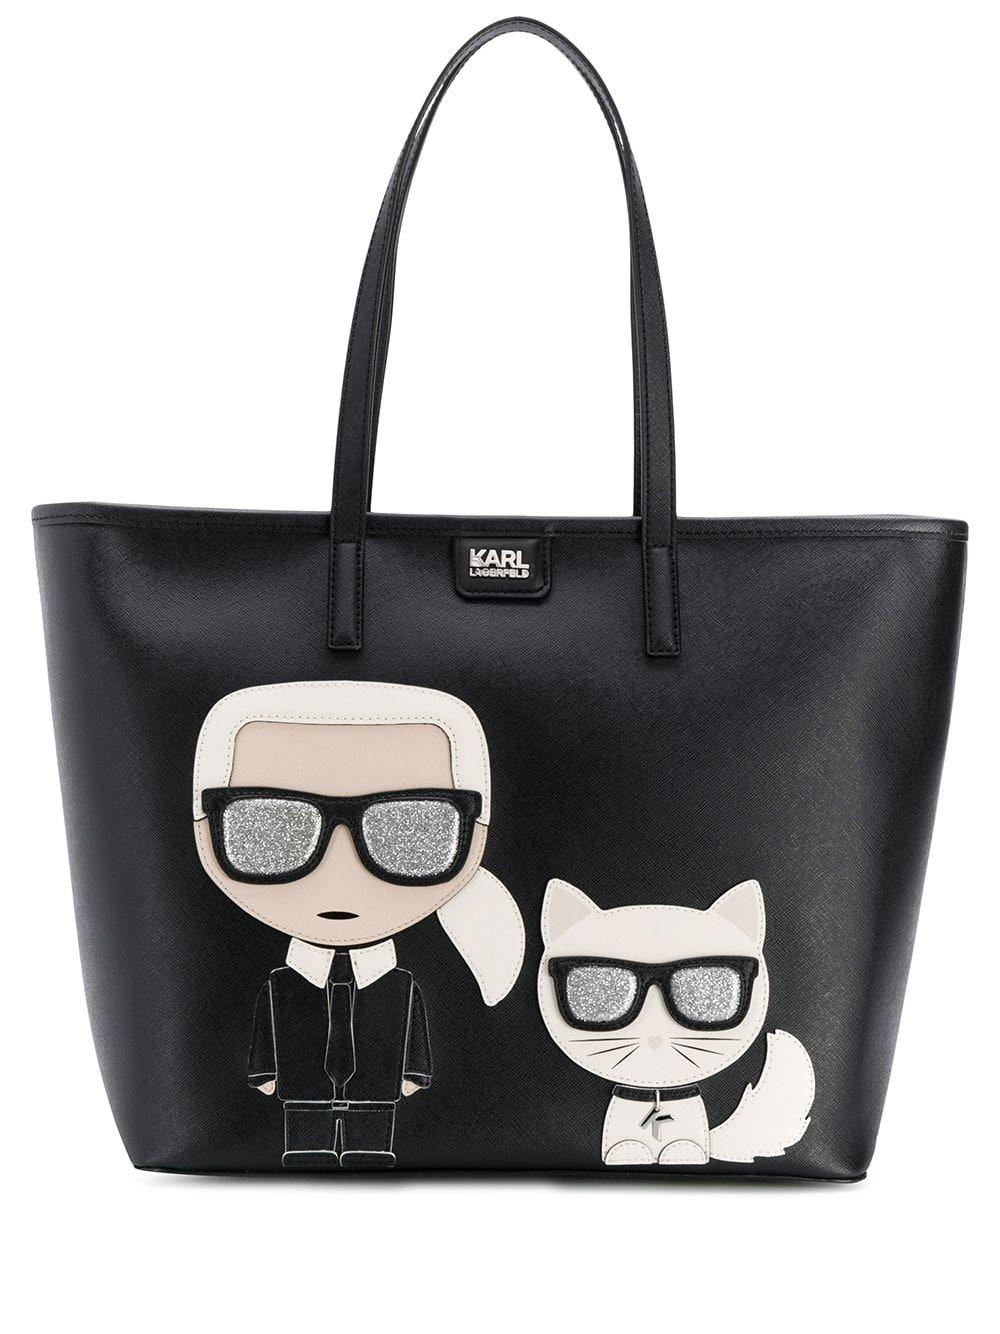 Karl Lagerfeld Leather K/ikonik Tote Bag in Black - Save 30% - Lyst